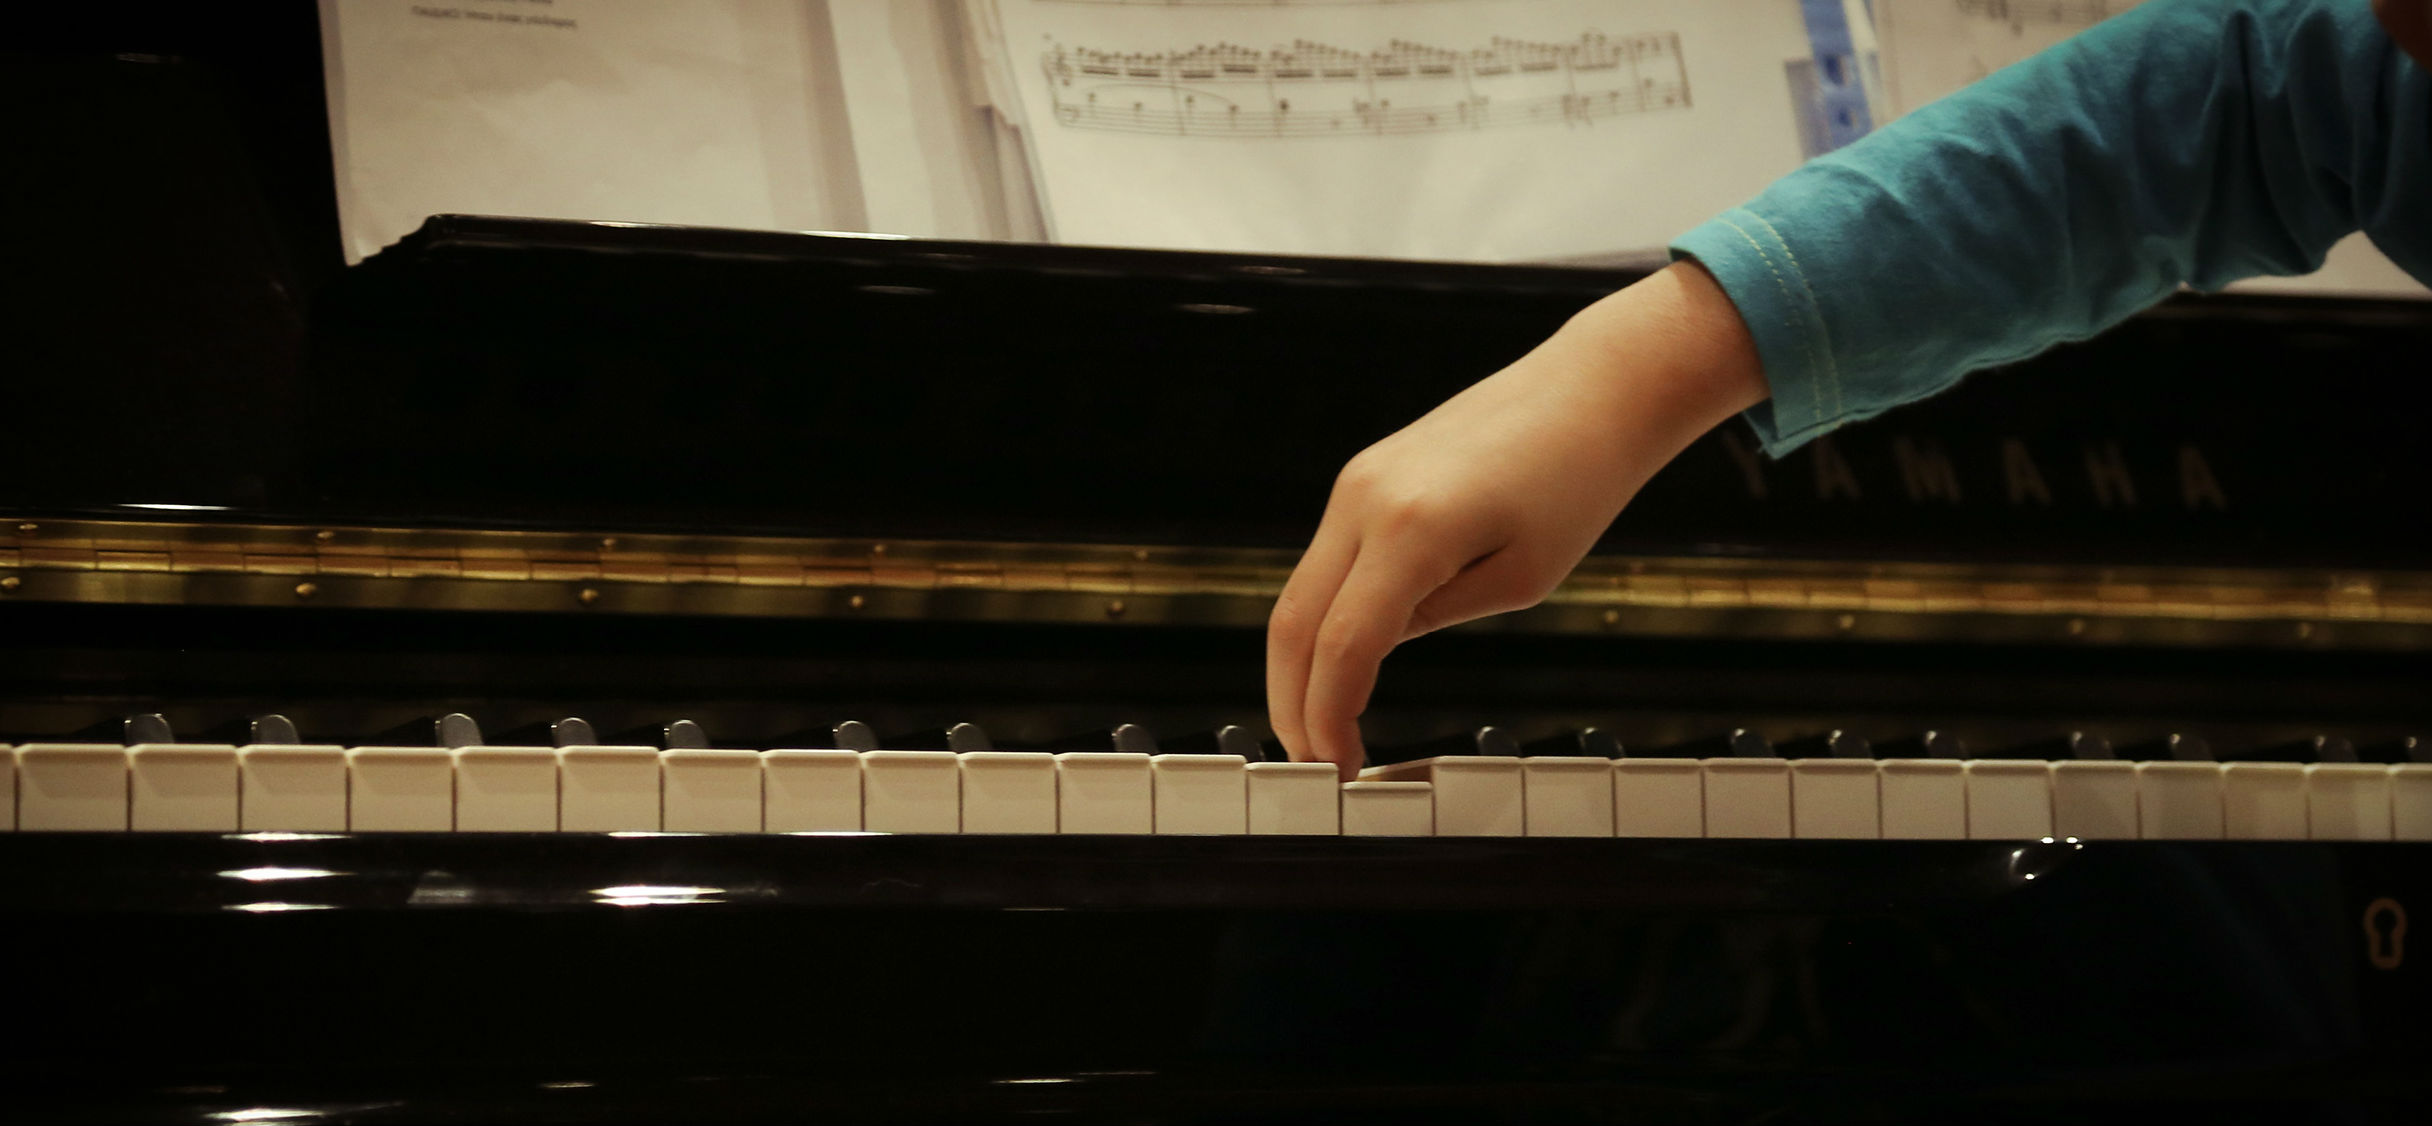 «Η μουσική αγαπάει τον αυτισμό» – Το μουσικό εργαστήριο της Στέγης ταξιδεύει στα Χανιά